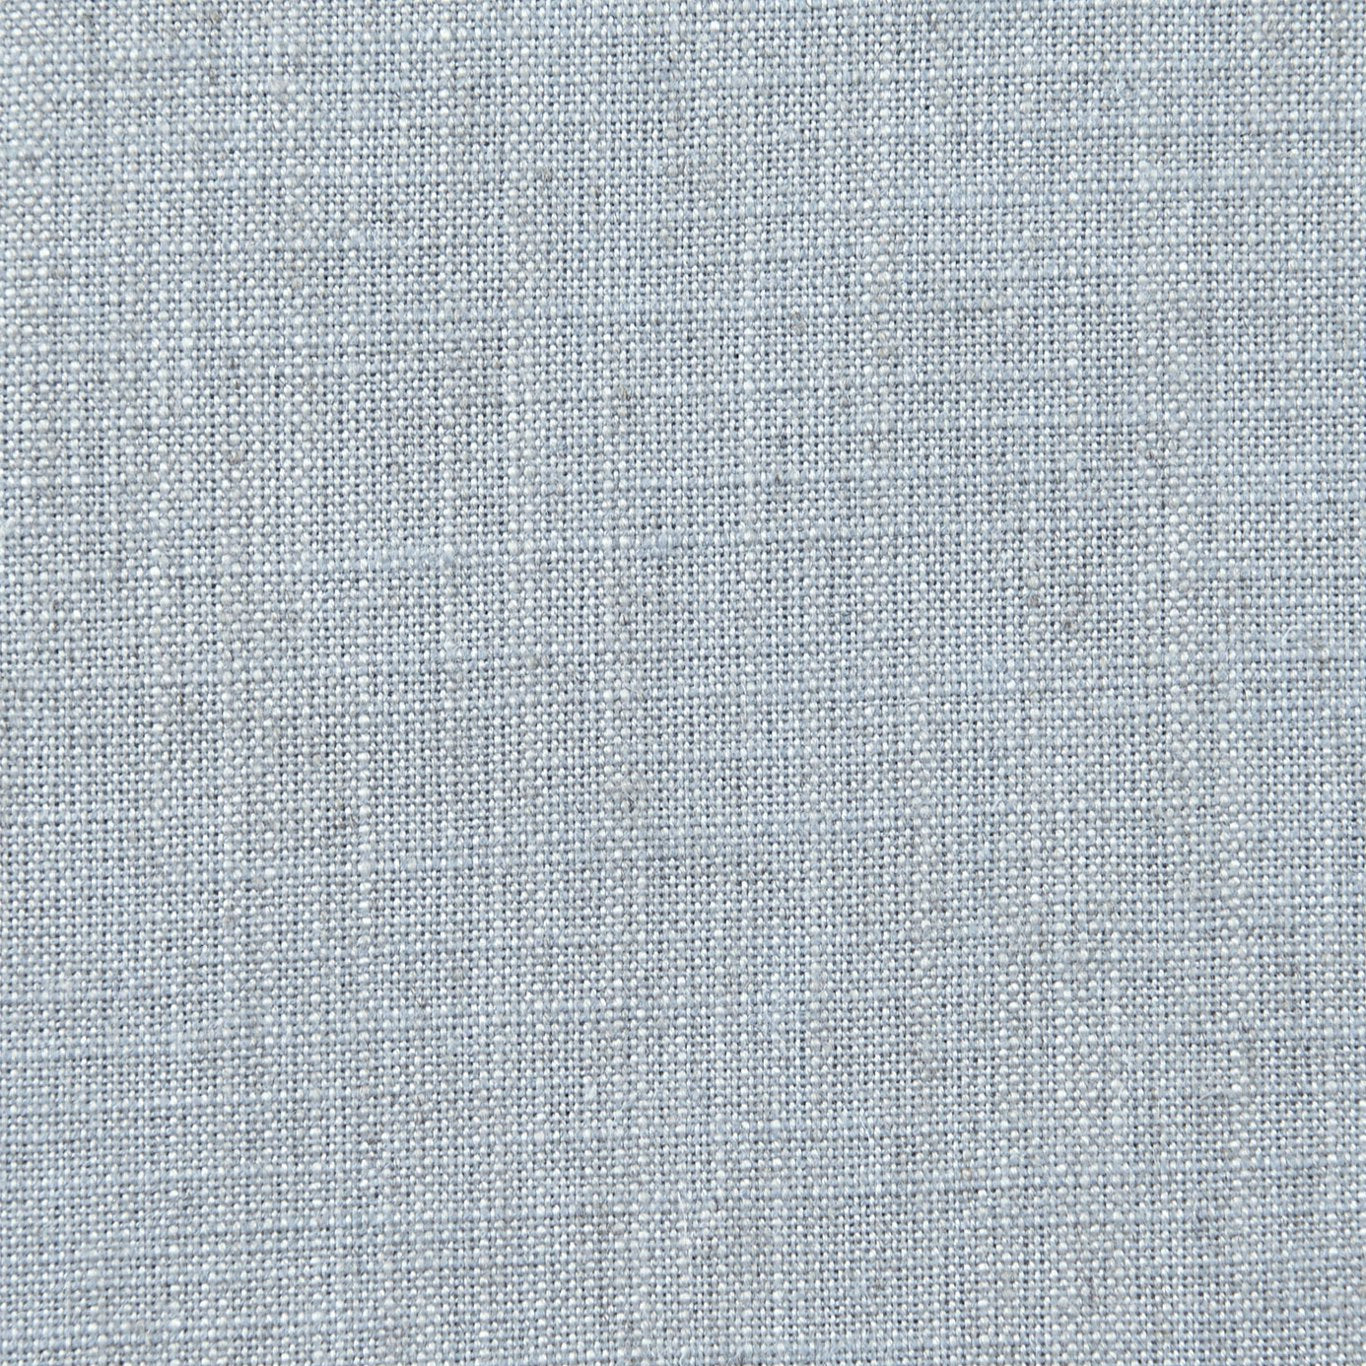 Biarritz Fabric by Clarke & Clarke - F0965/43 - Sky